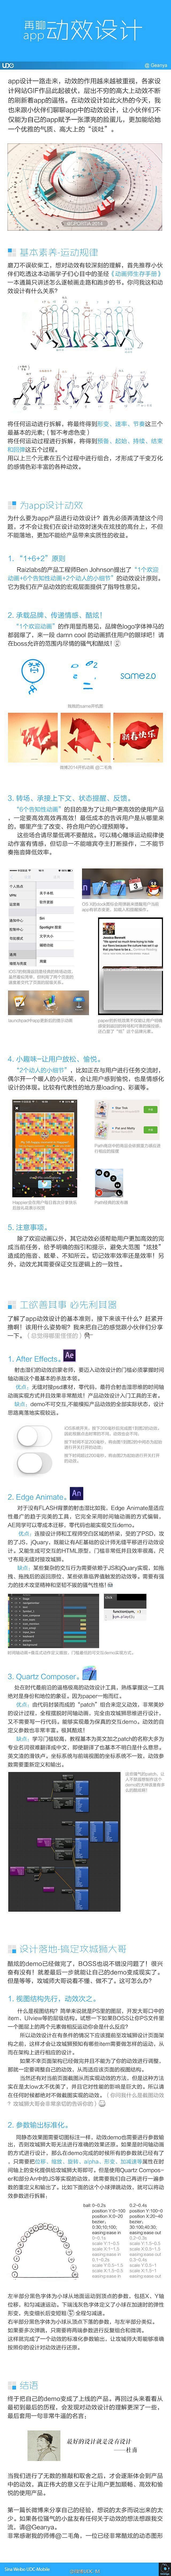 【再聊app动效设计】-UI中国-专业界...